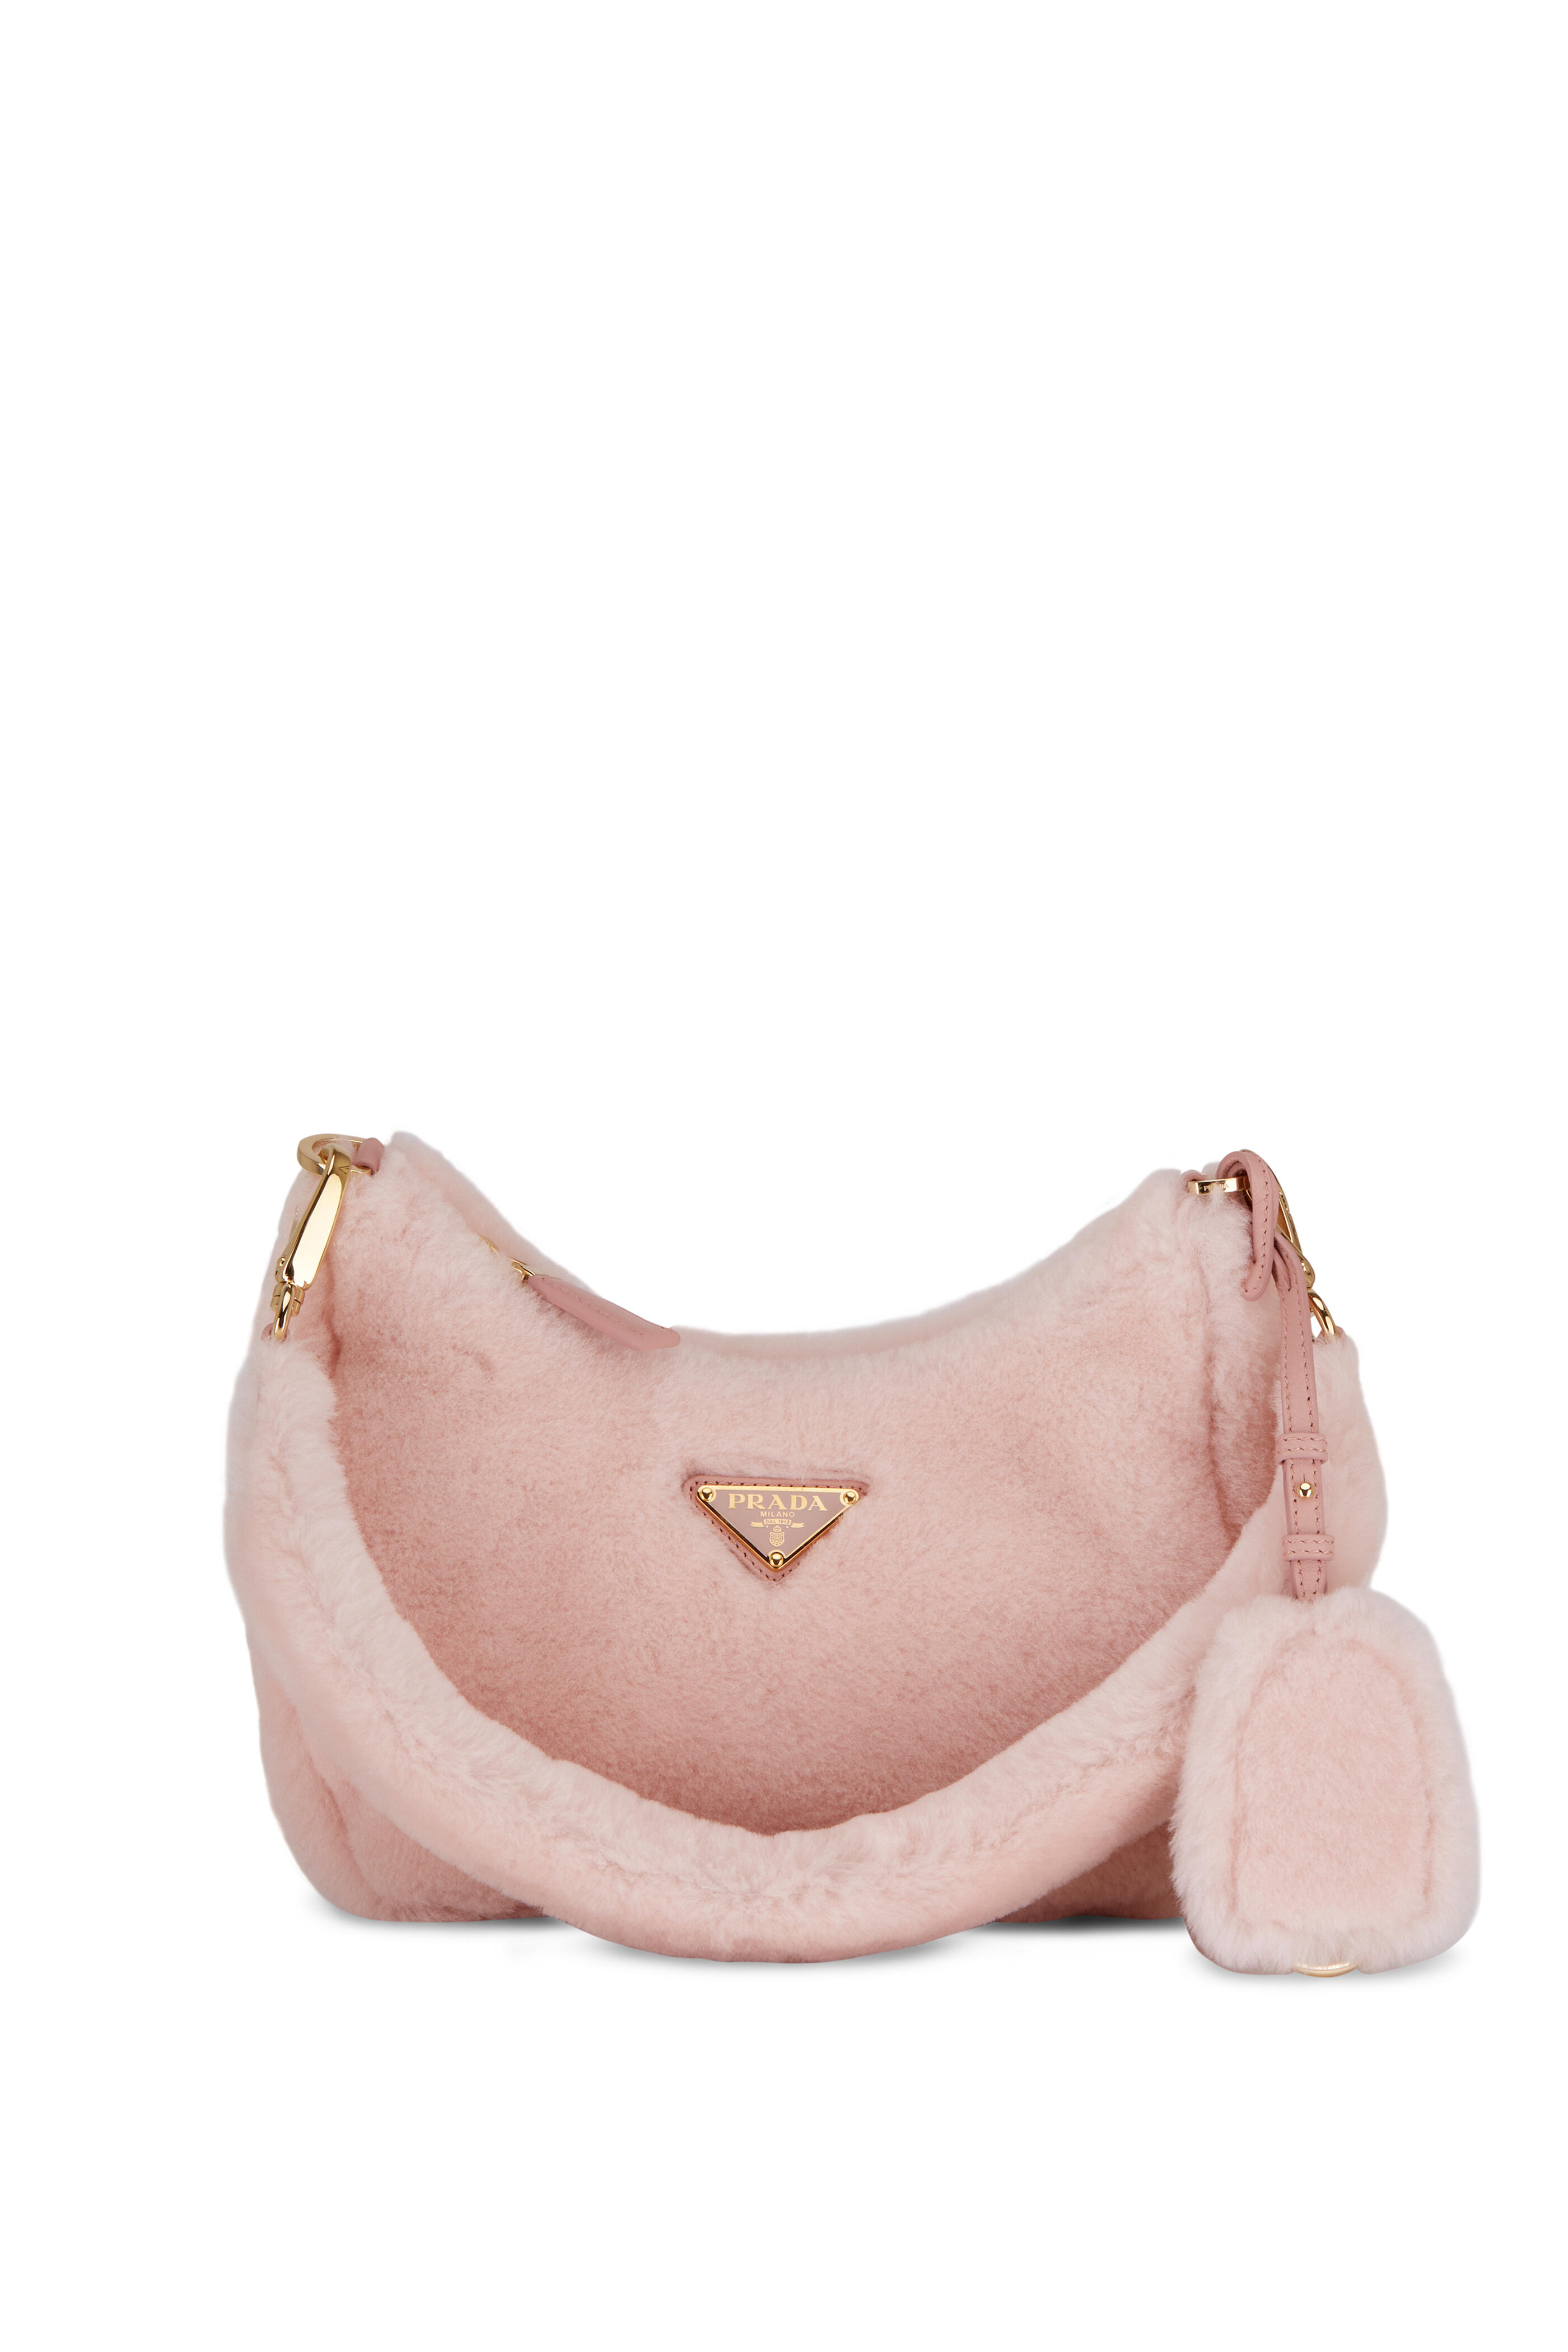 Prada Re-edition Shearling Bag in Pink